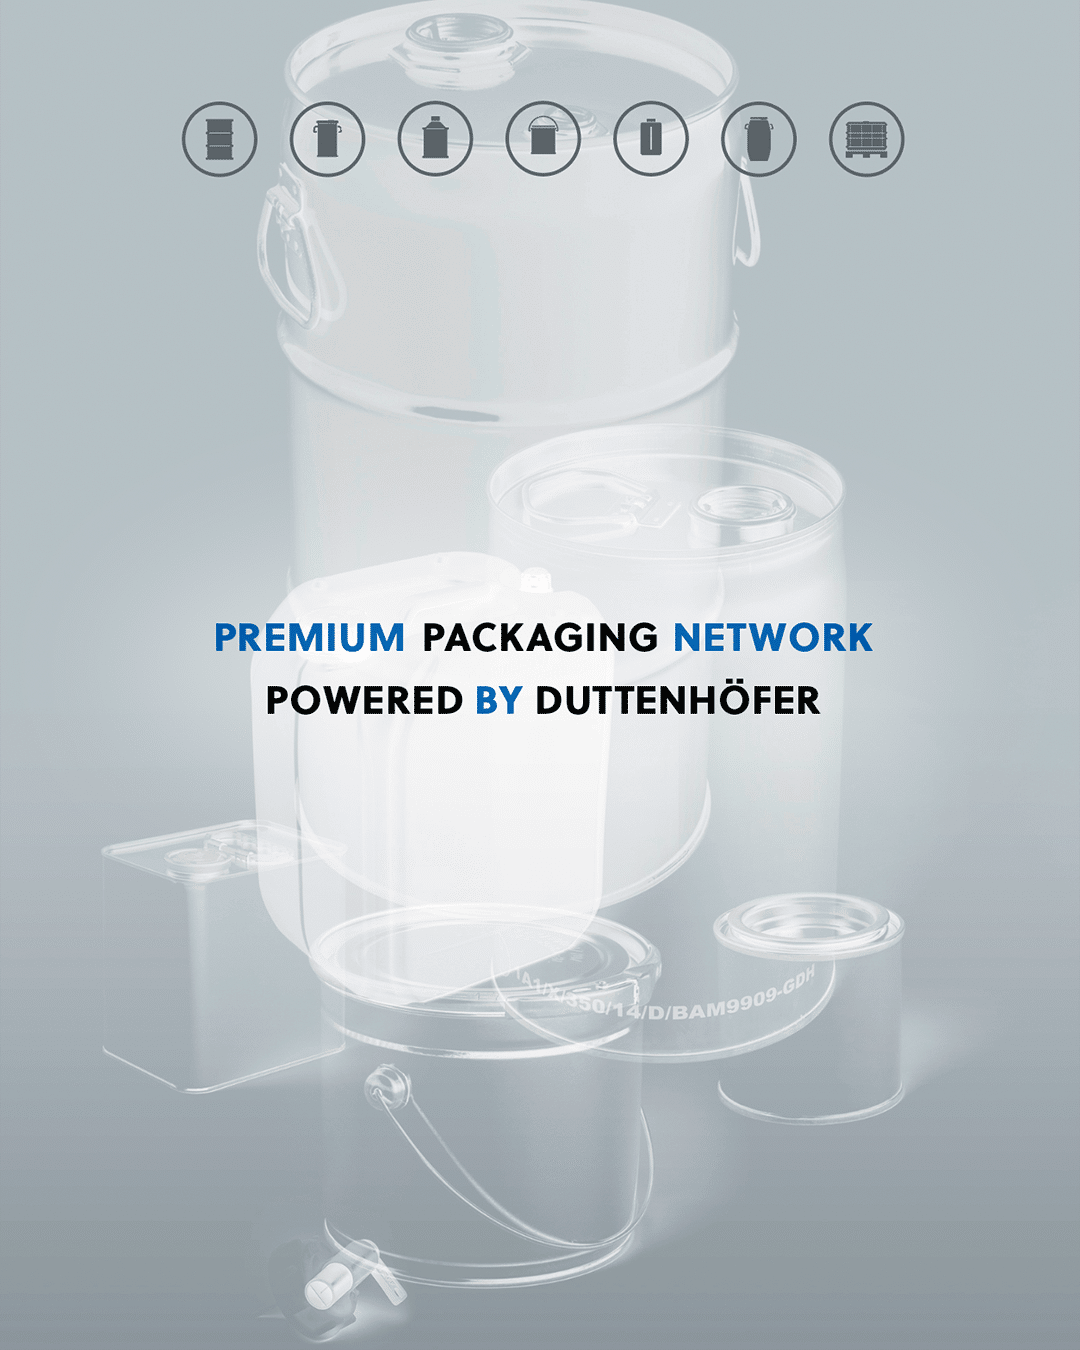 PPPN Premium Packaging Network powered by Duttenhöfer. Bedarfsgrechte Verpackungslösungen. Das Beste kommt von uns zusammen